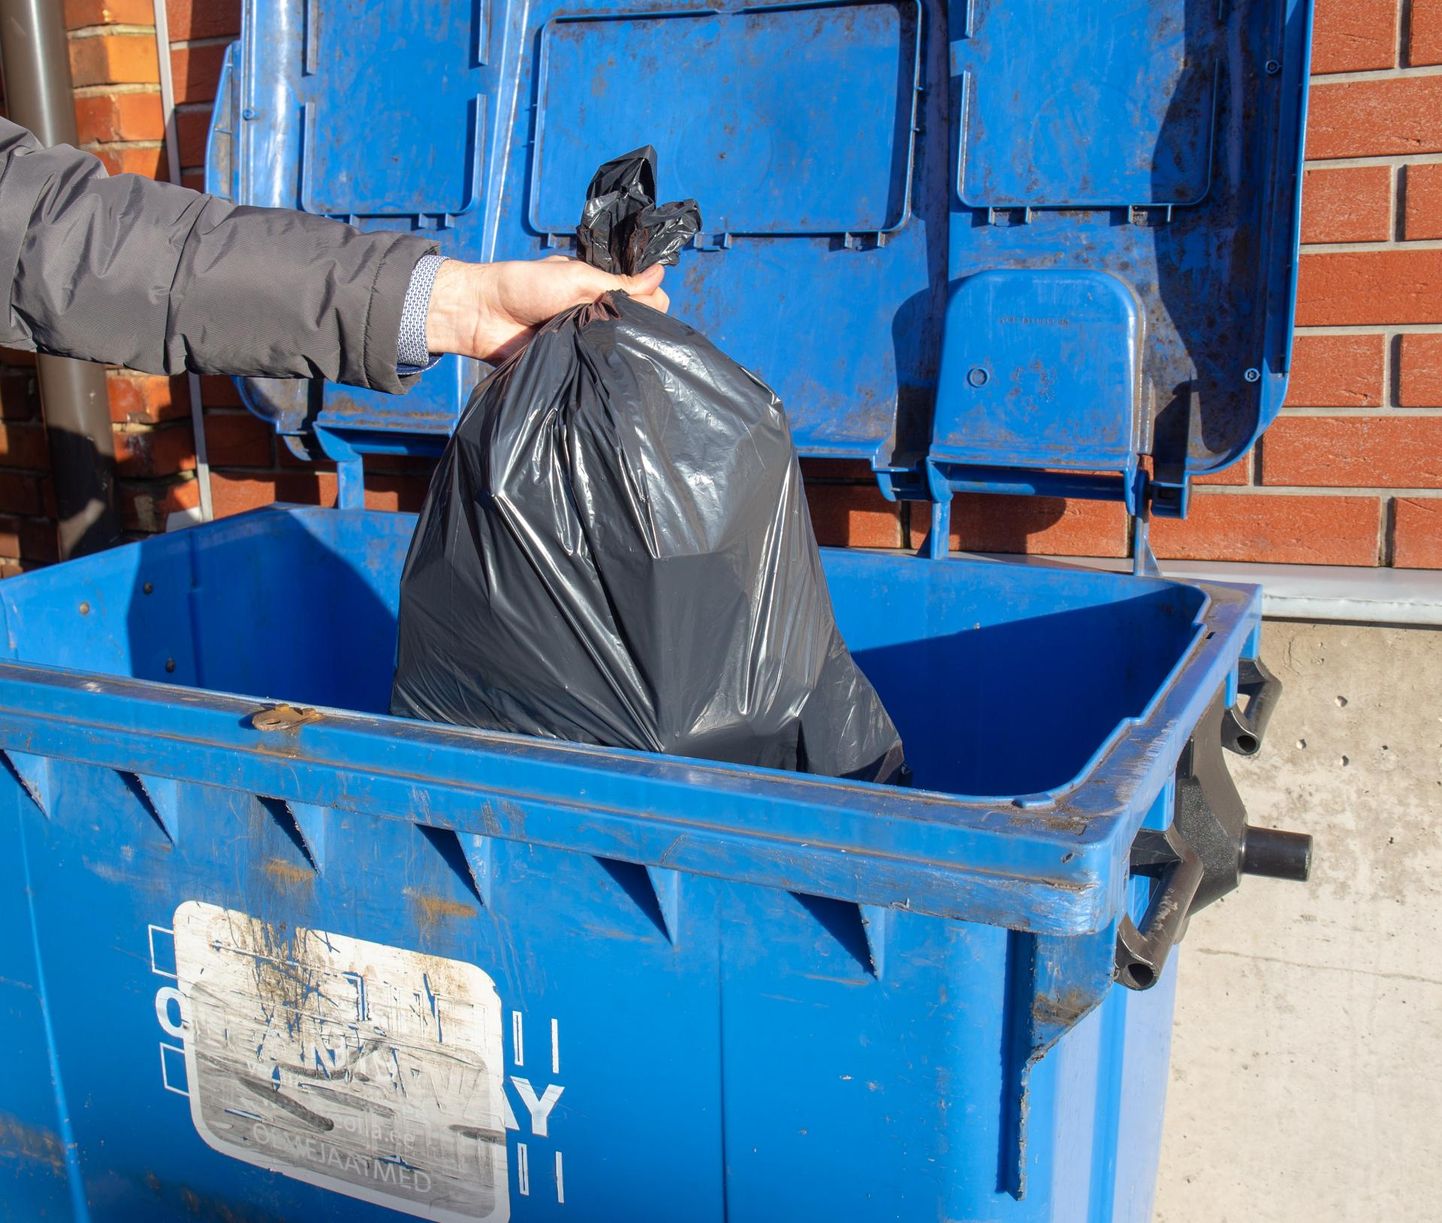 Uuring näitab, et Tallinna elanike seas on jäätmete sorteerimine muutunud populaarsemaks.